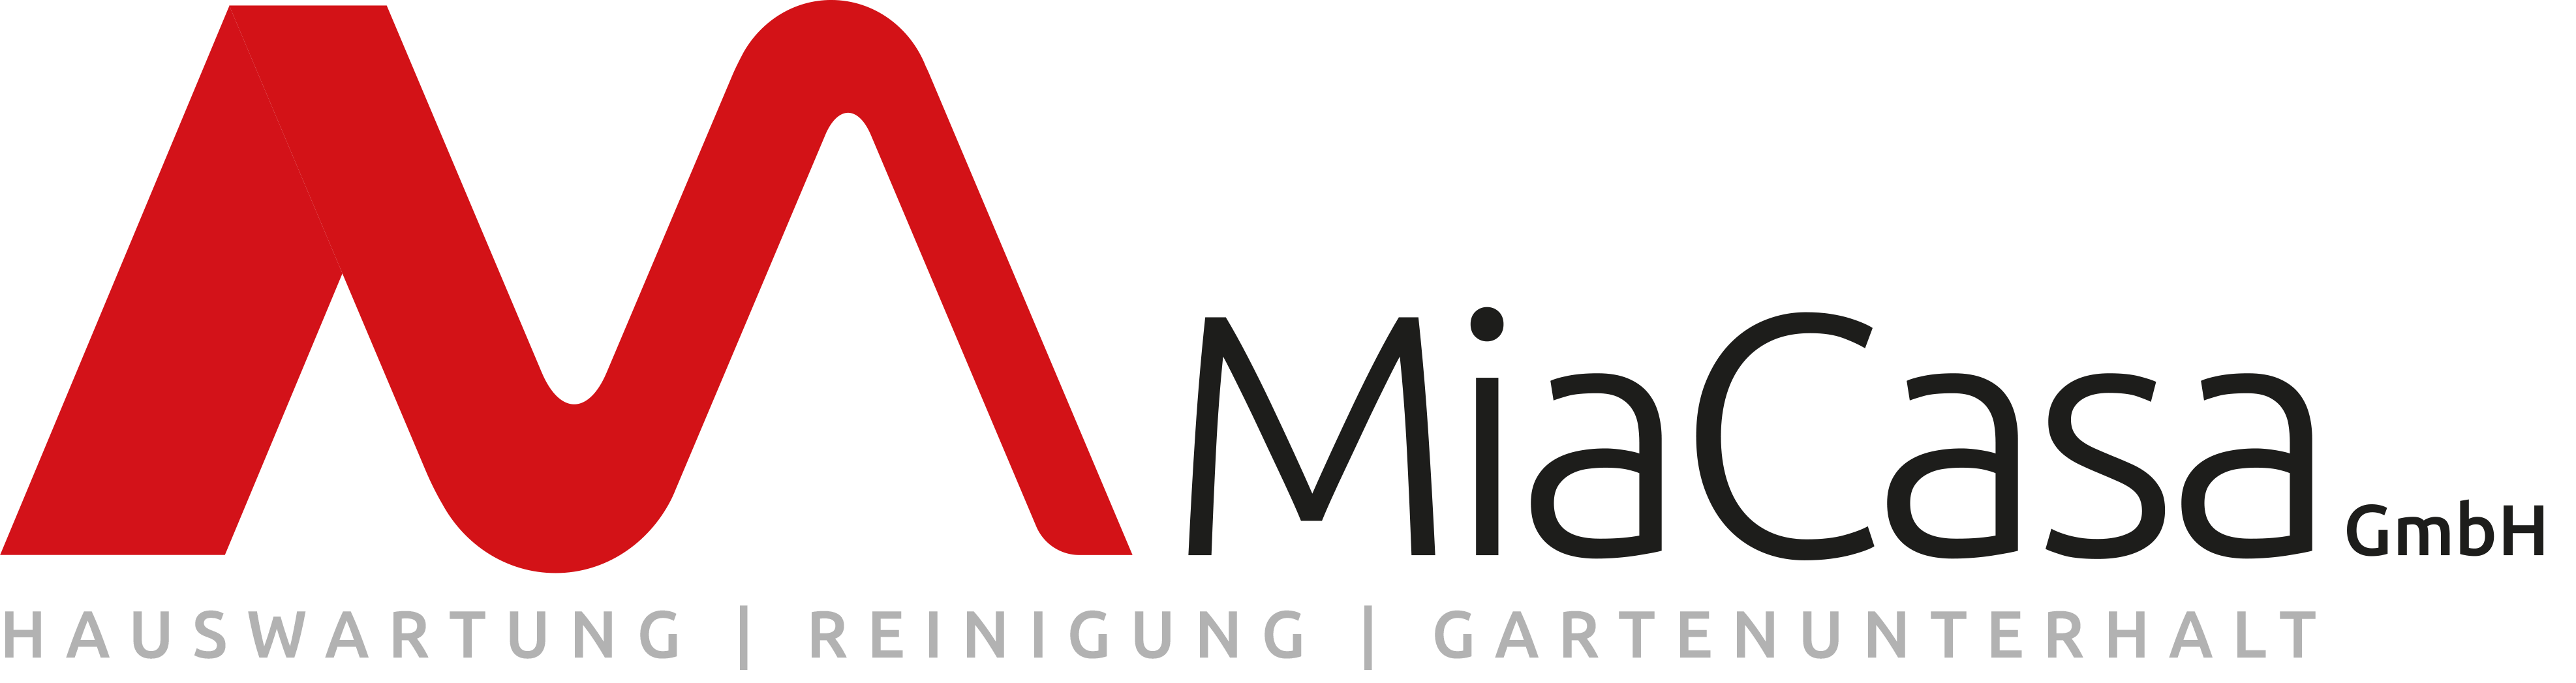 MiaCasa GmbH | Hauswartung und Reinigung in Bern